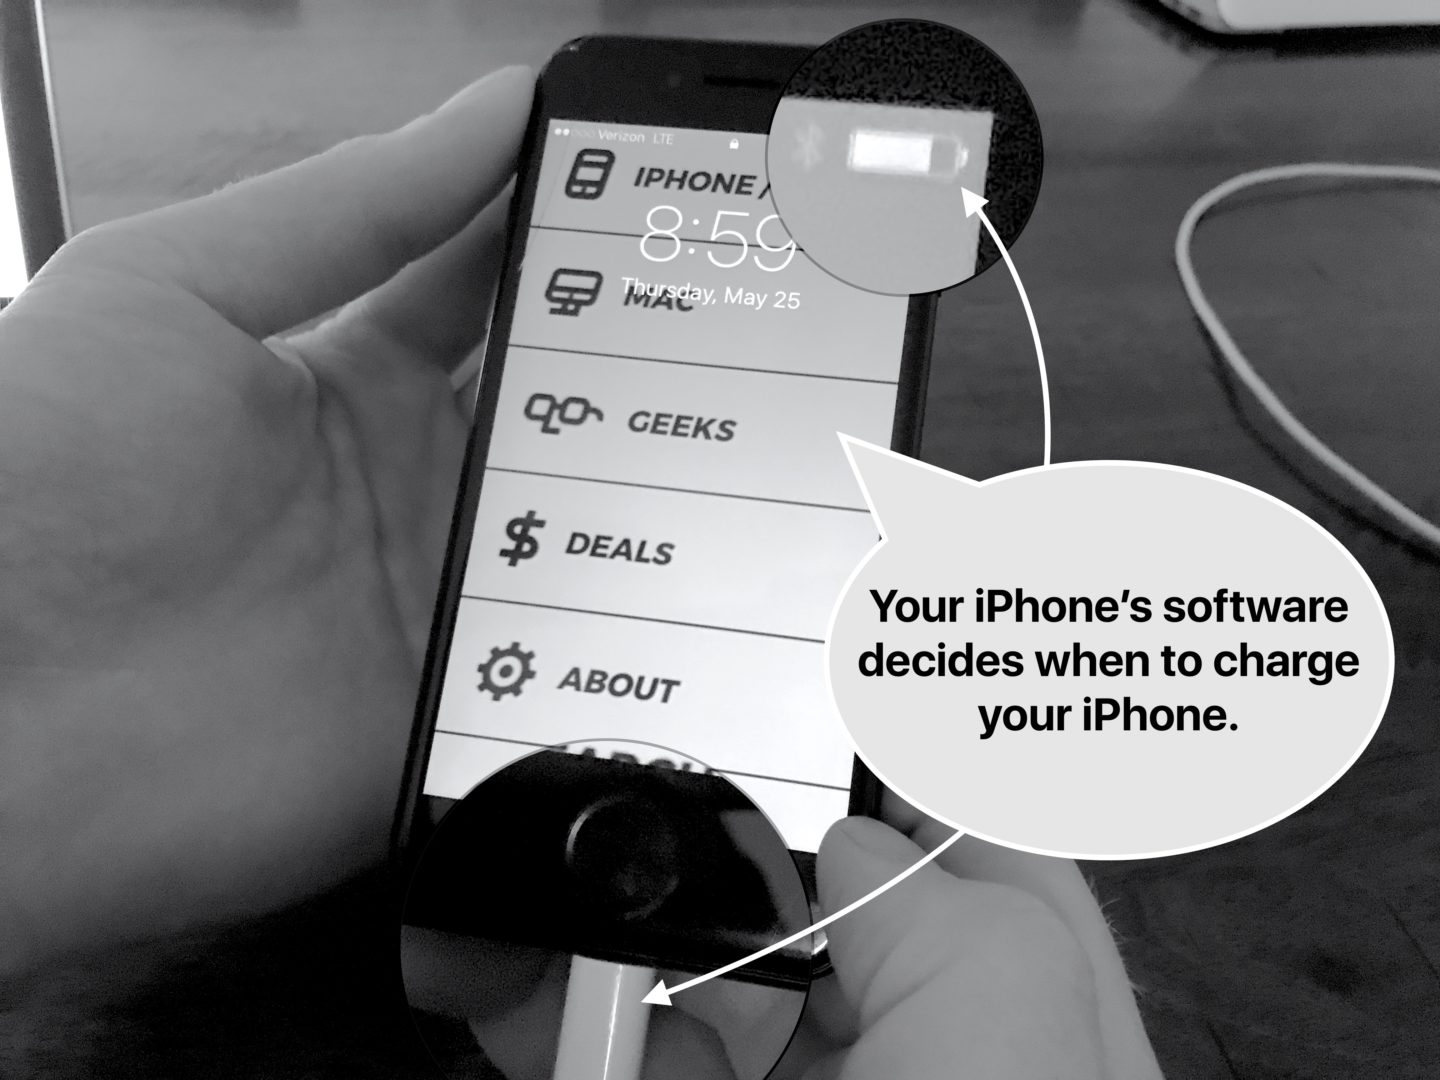 Le logiciel iPhone décide quand charger votre iPhone